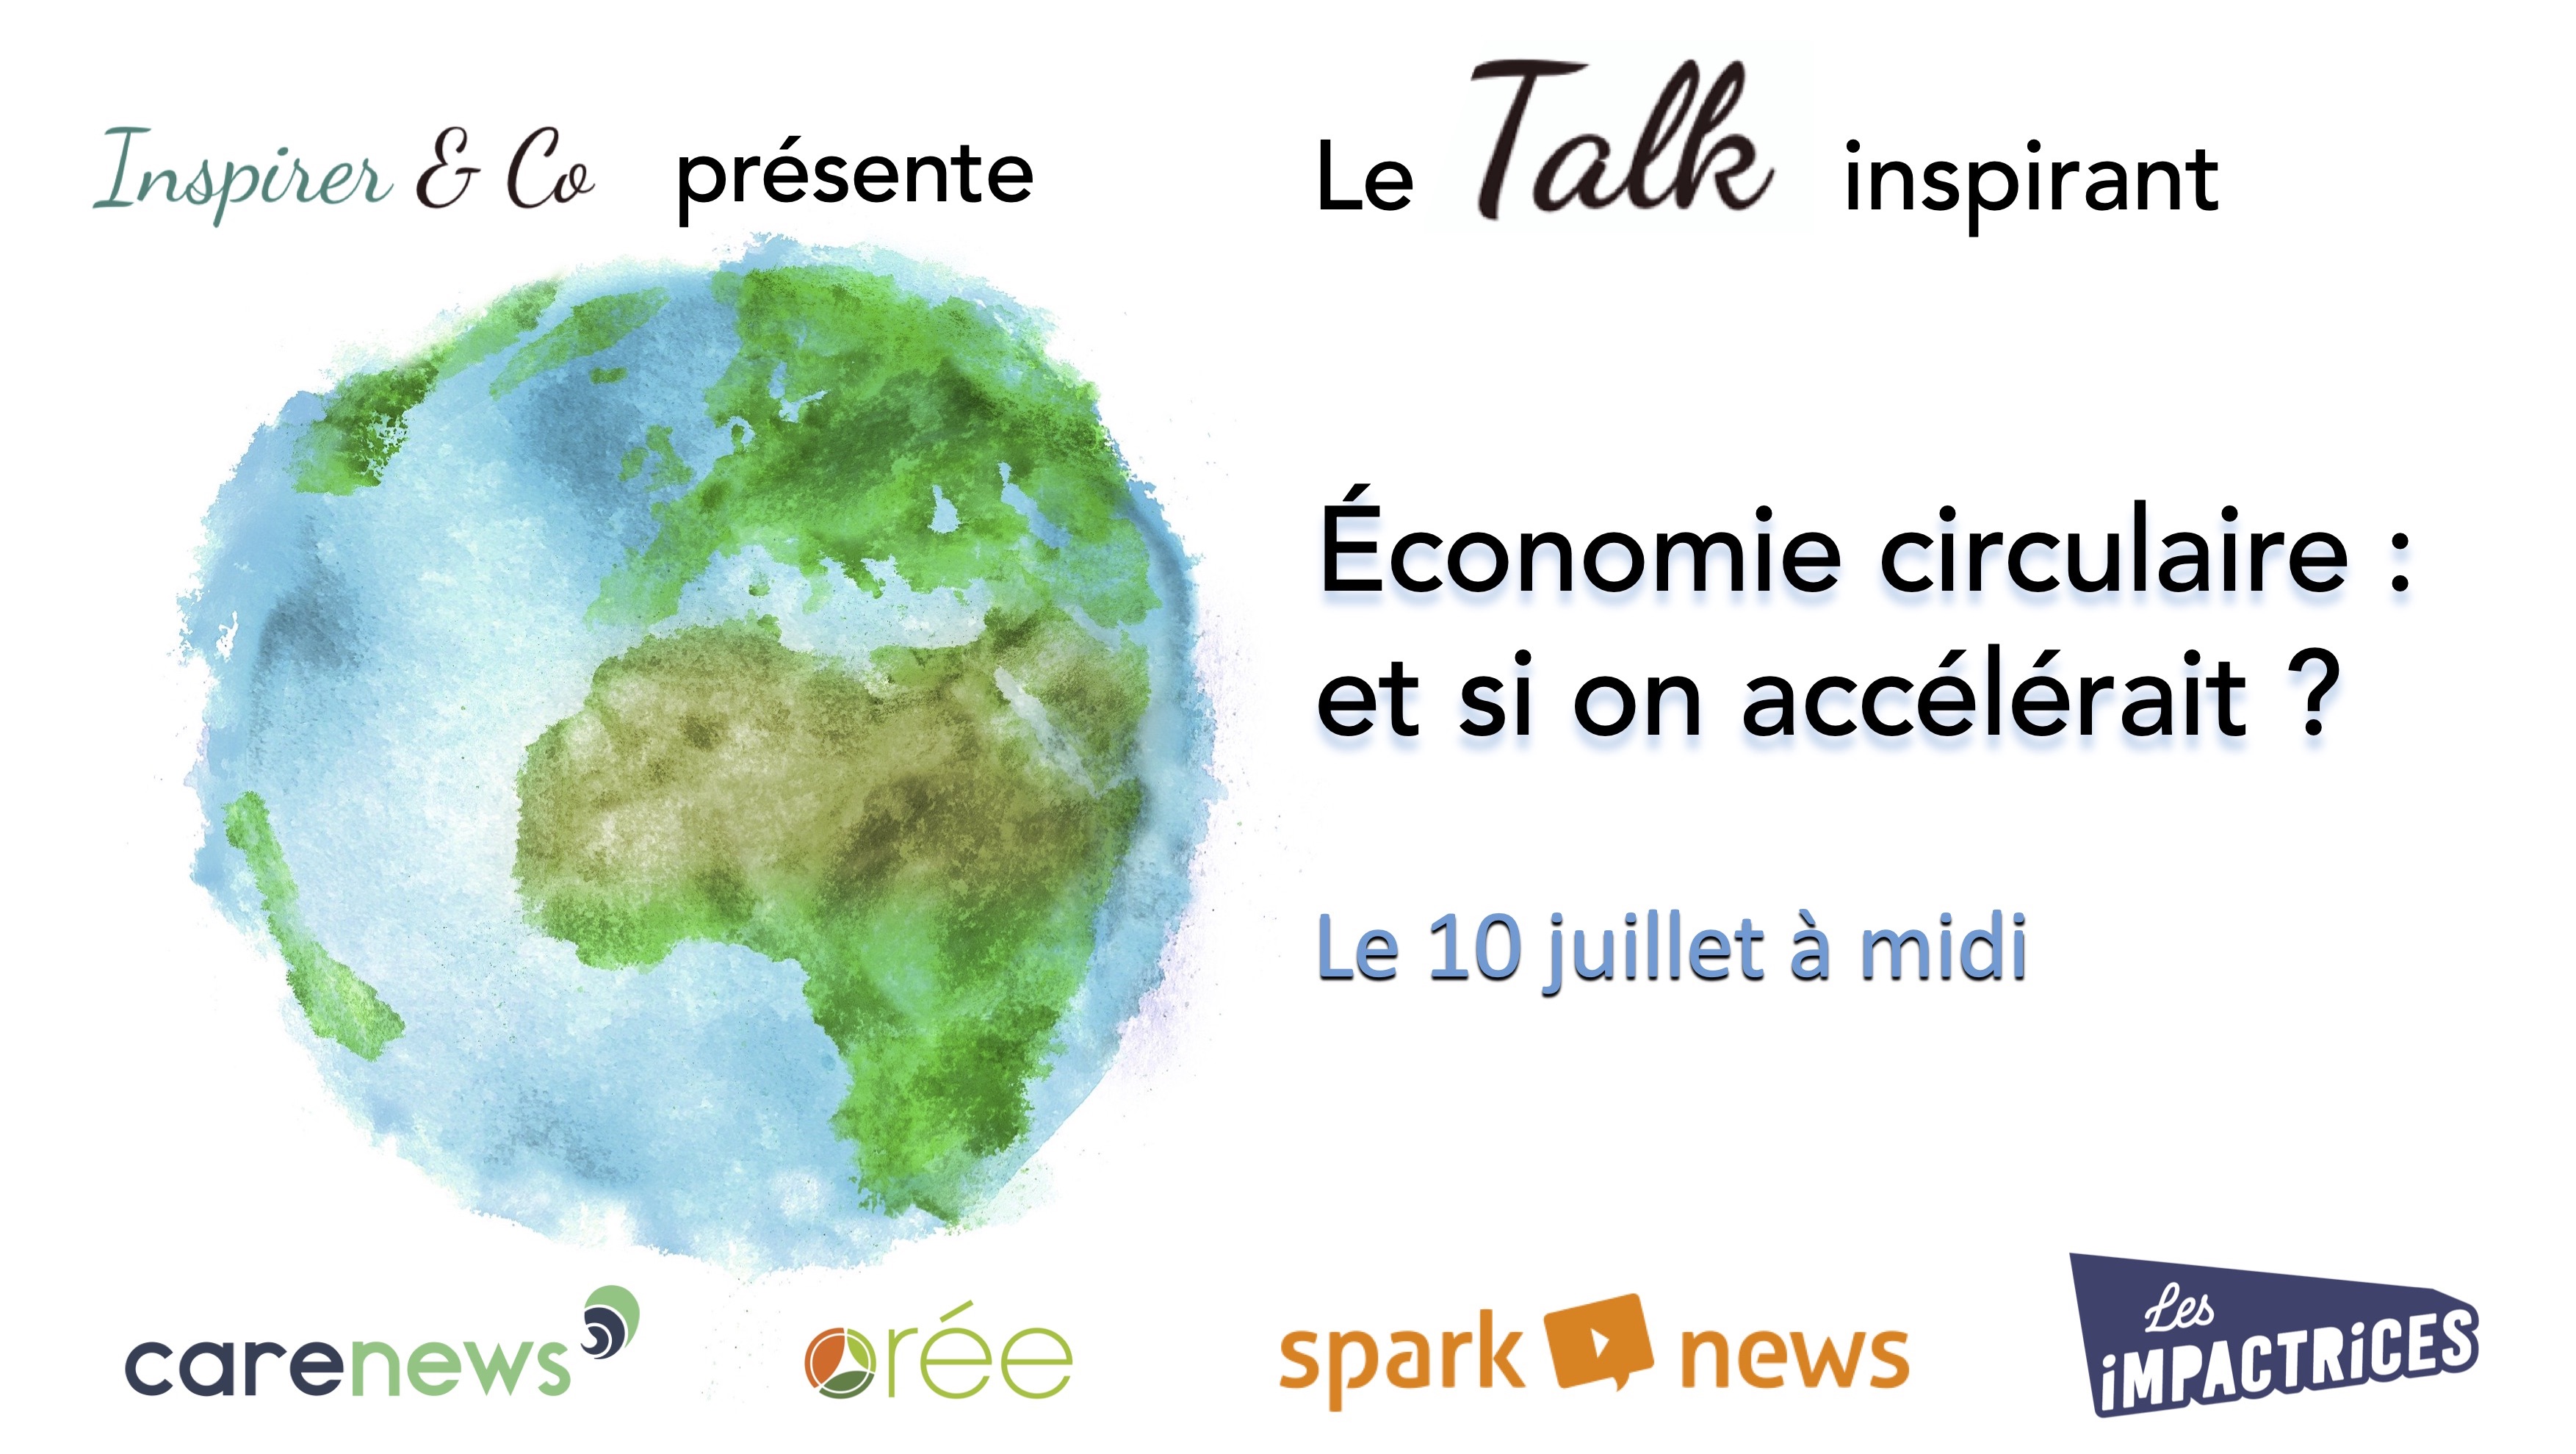 https://www.carenews.com/evenements/economie-circulaire-et-si-on-accelerait-talk-inspirant-sur-youtube